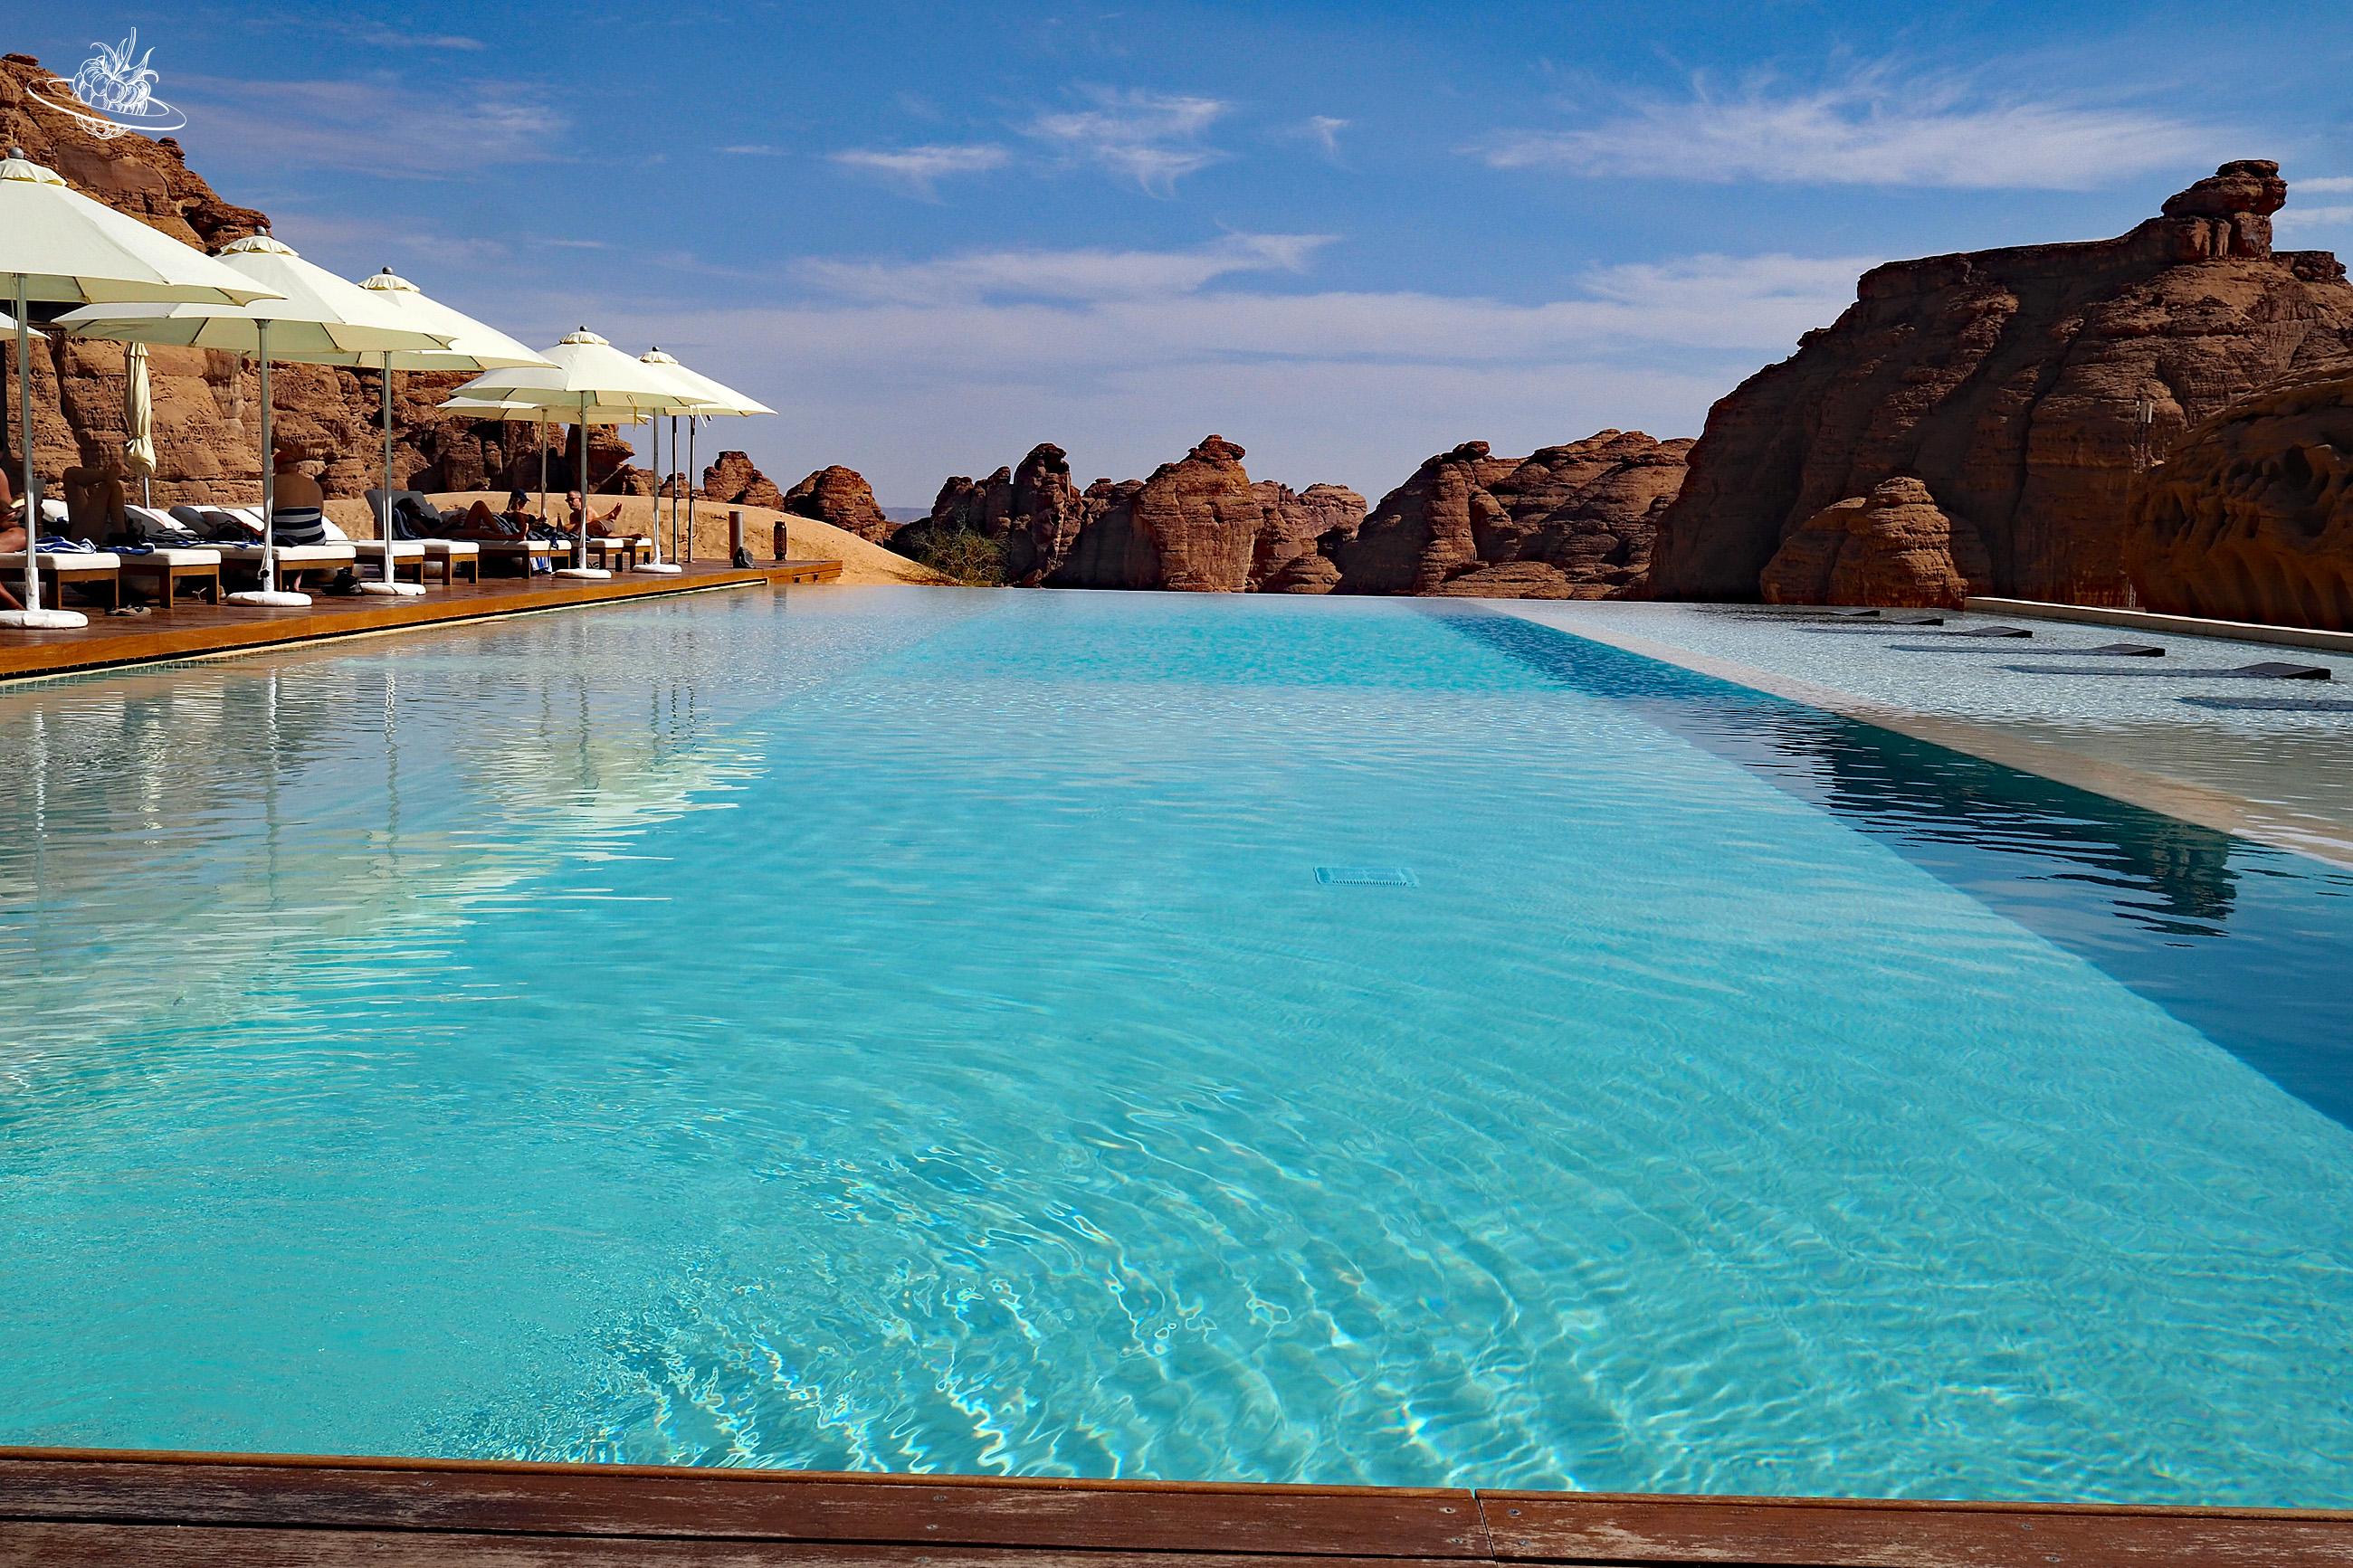 schwimmbad hotel in der wüste